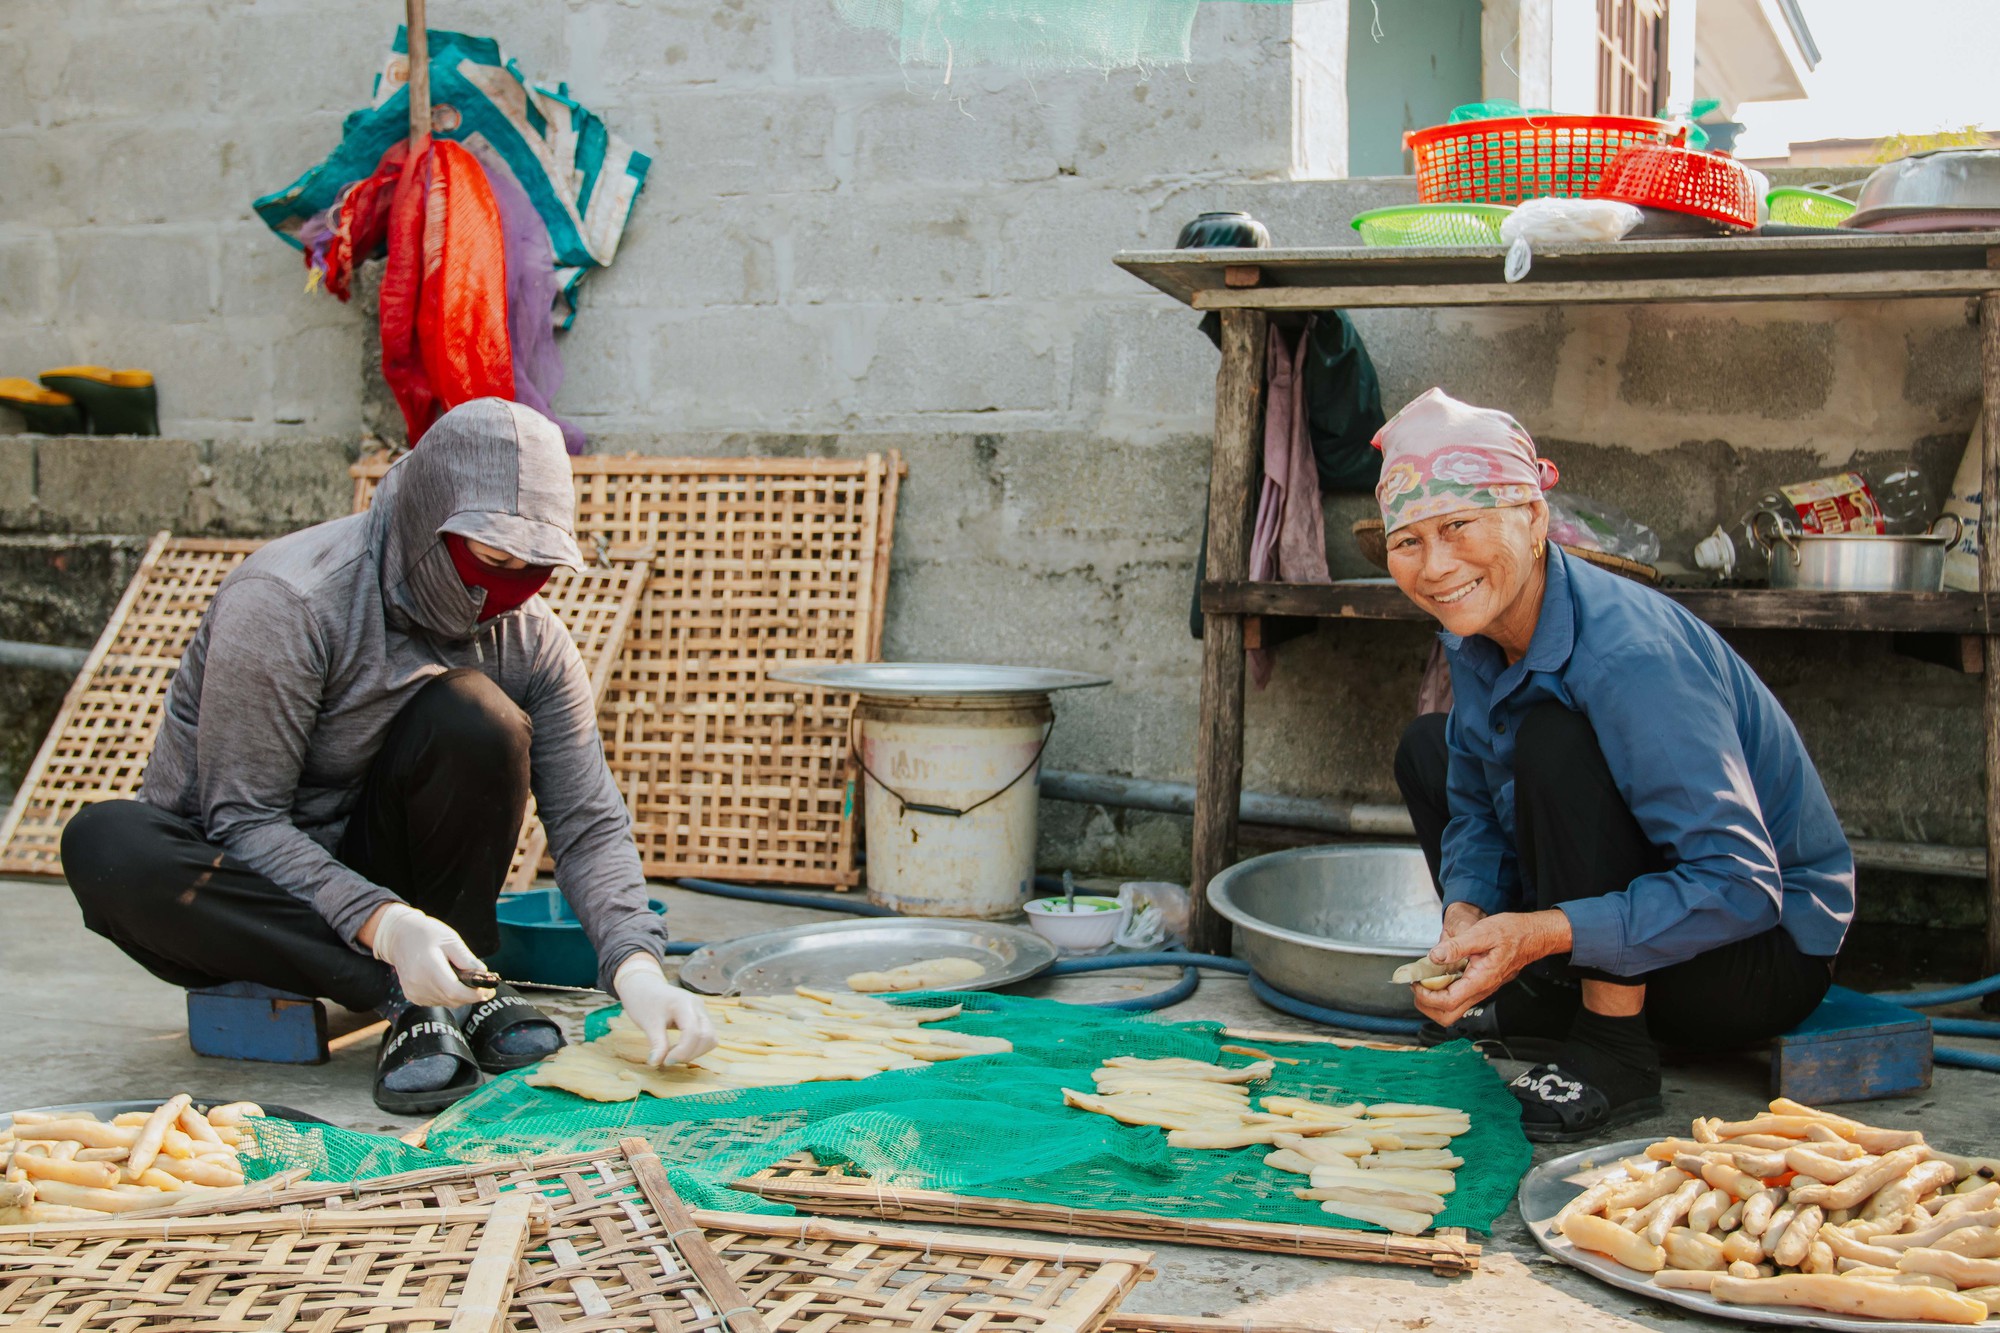 Về thủ phủ khoai deo khám phá cách làm món ăn đặc sản Quảng Bình - Ảnh 1.